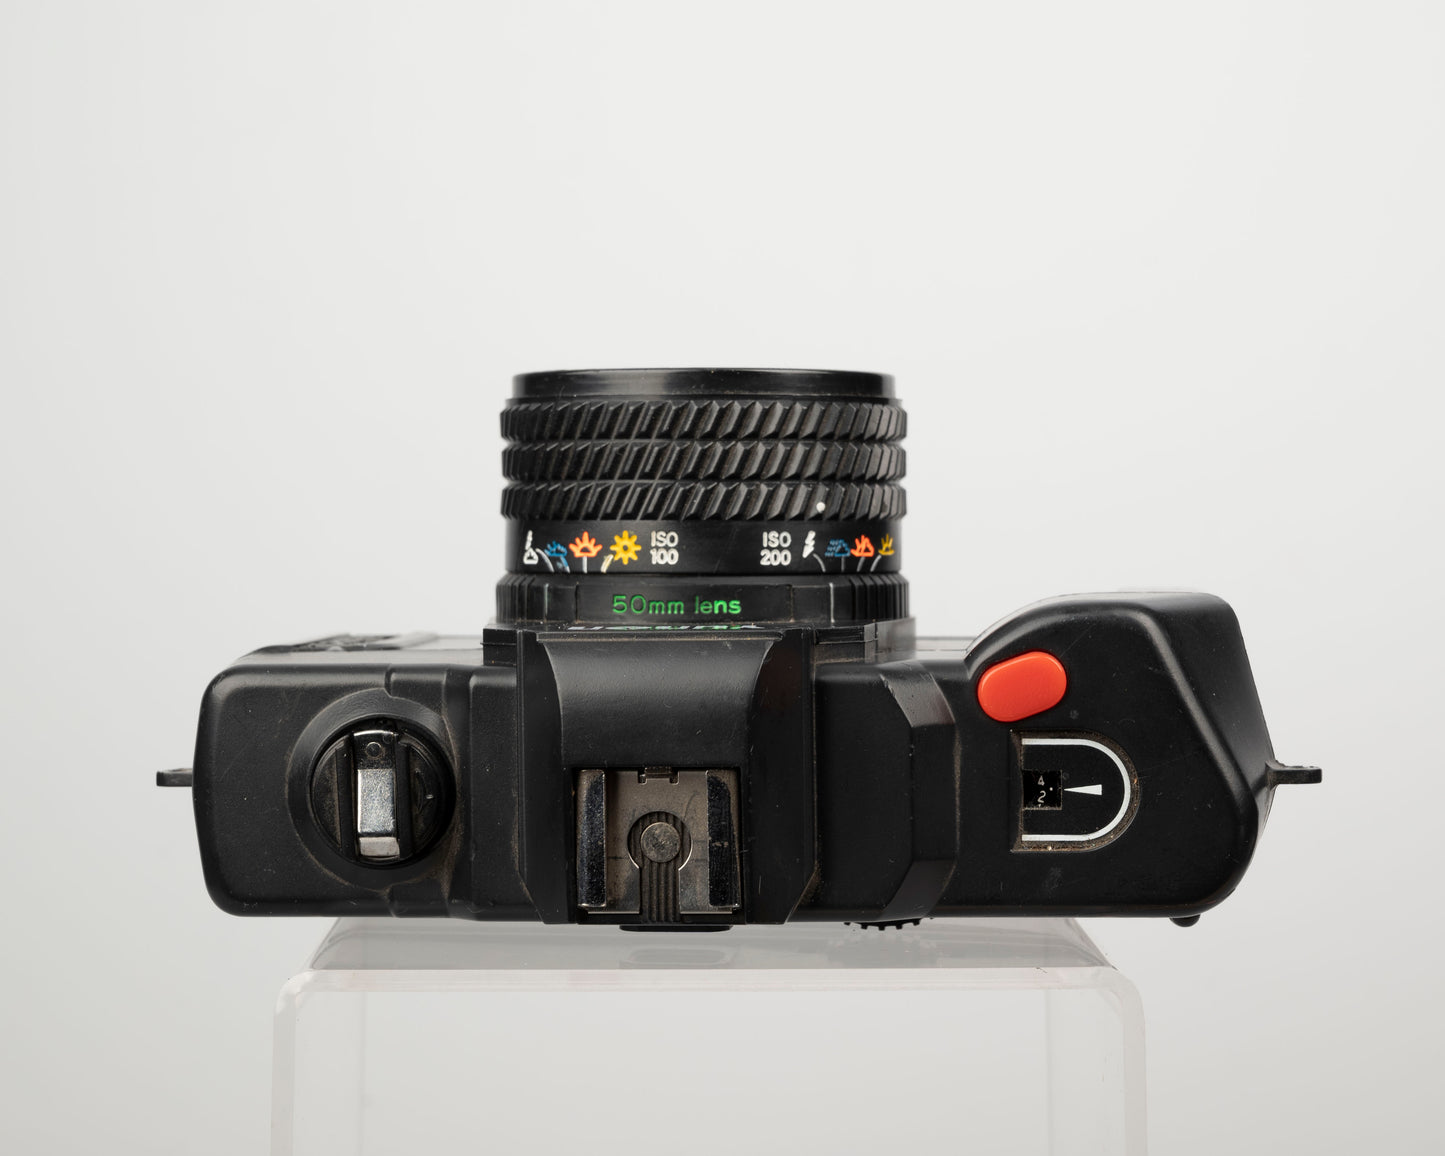 Yunon Deluxe-I 35mm film camera